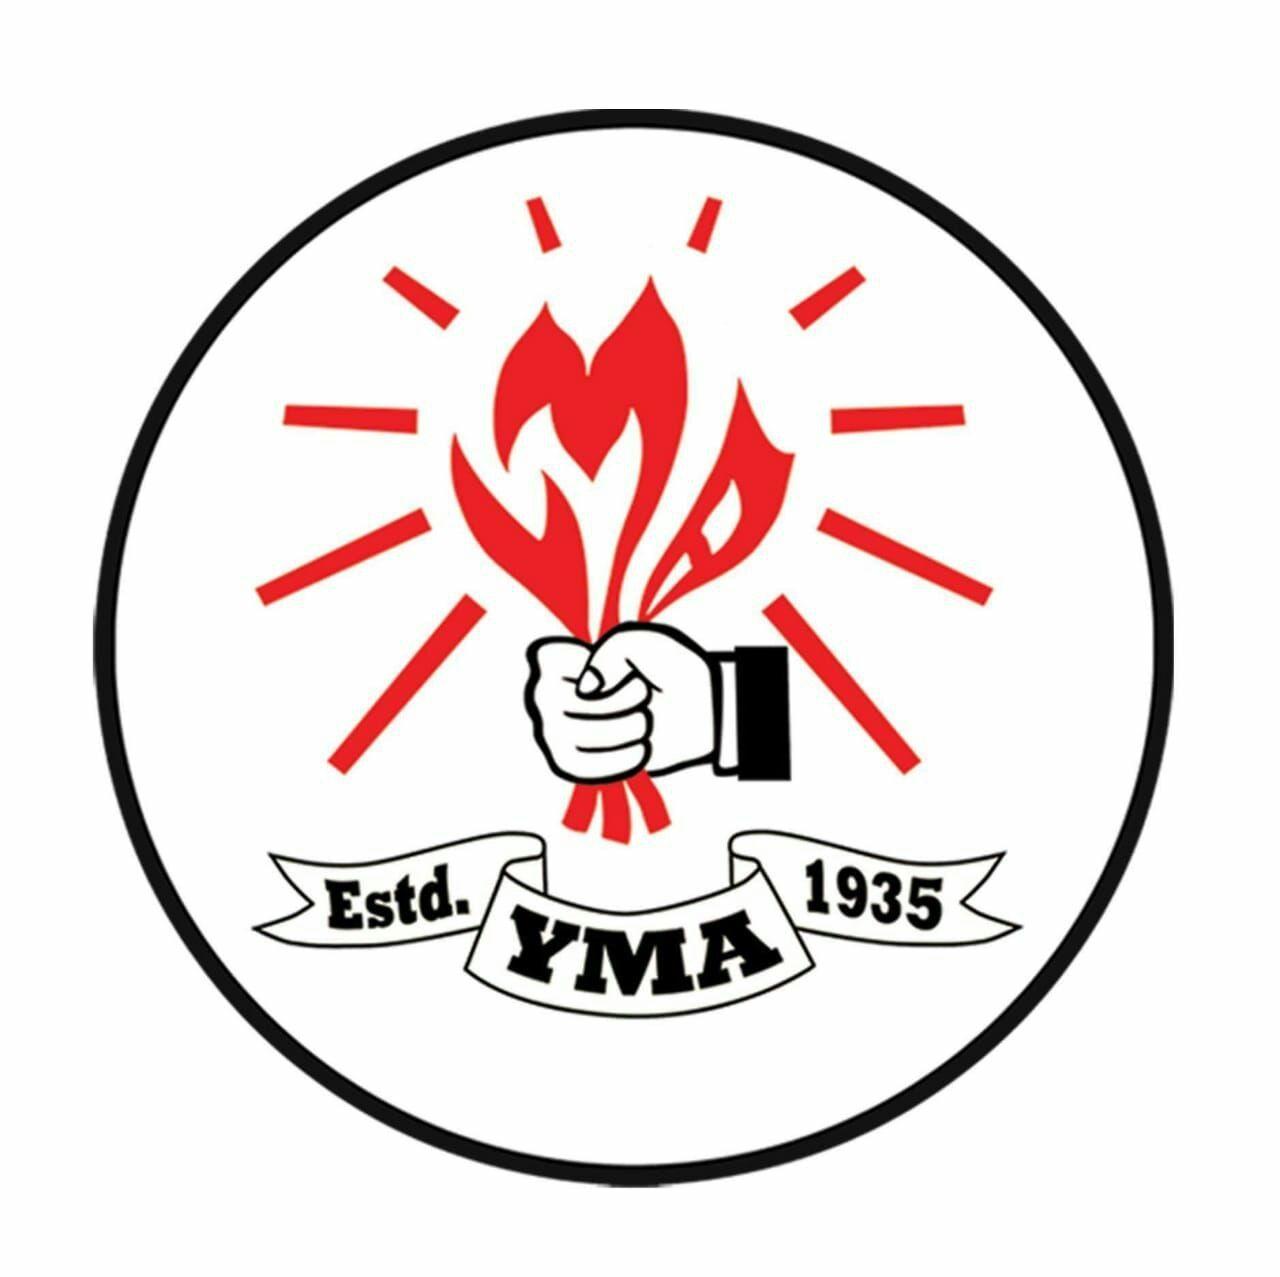 Yma Logo - CCC, YMA thuchhuak